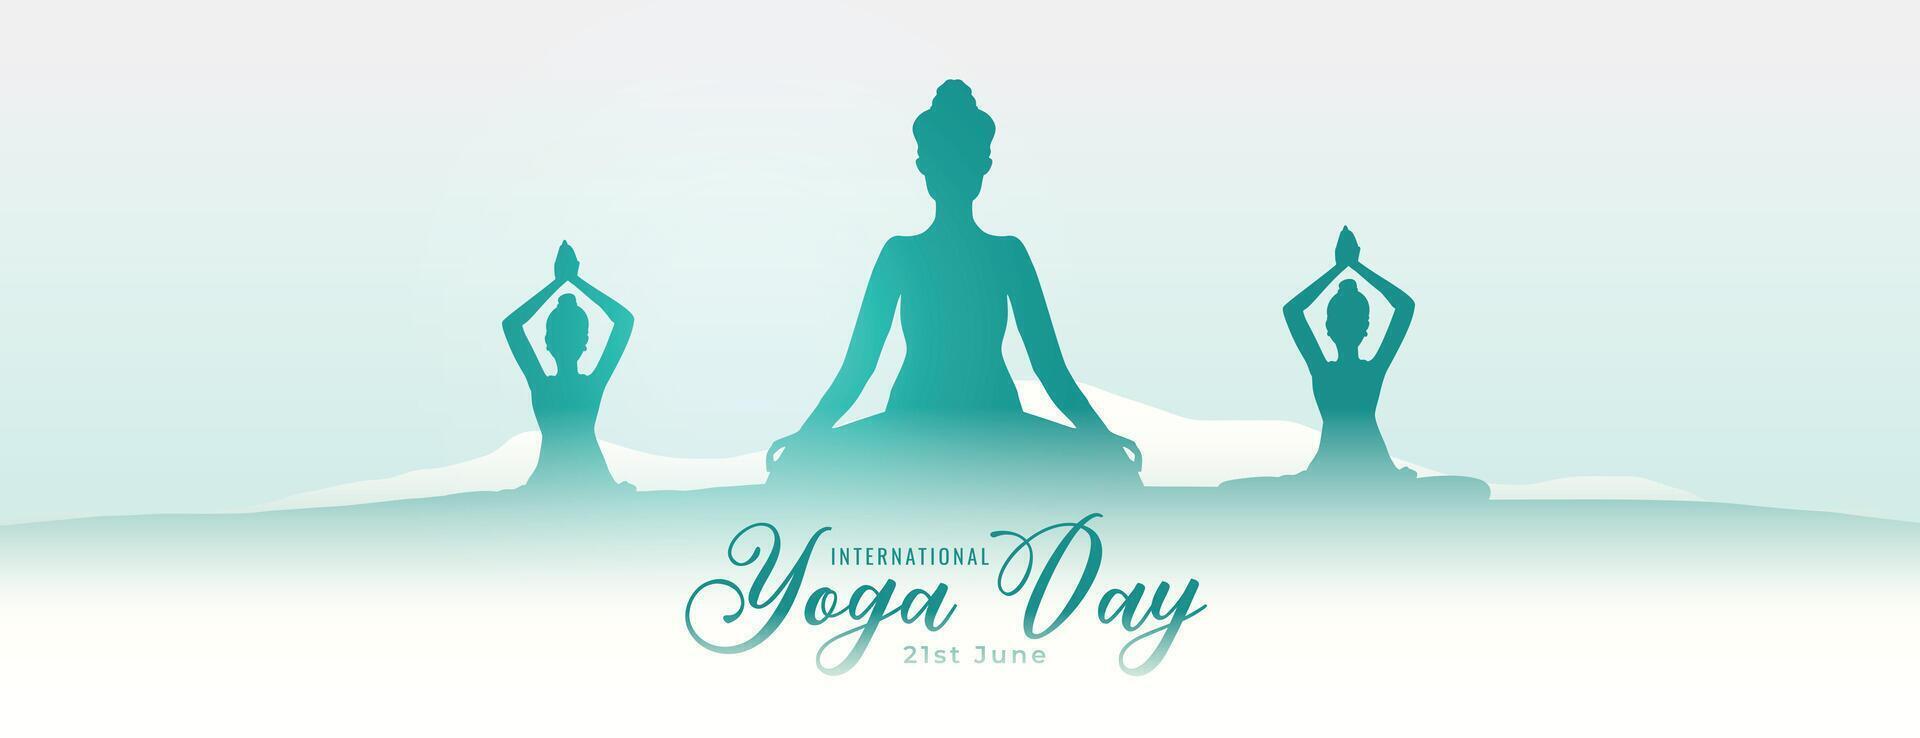 International Yoga Tag Veranstaltung Poster zum innere Frieden und Ruhe vektor